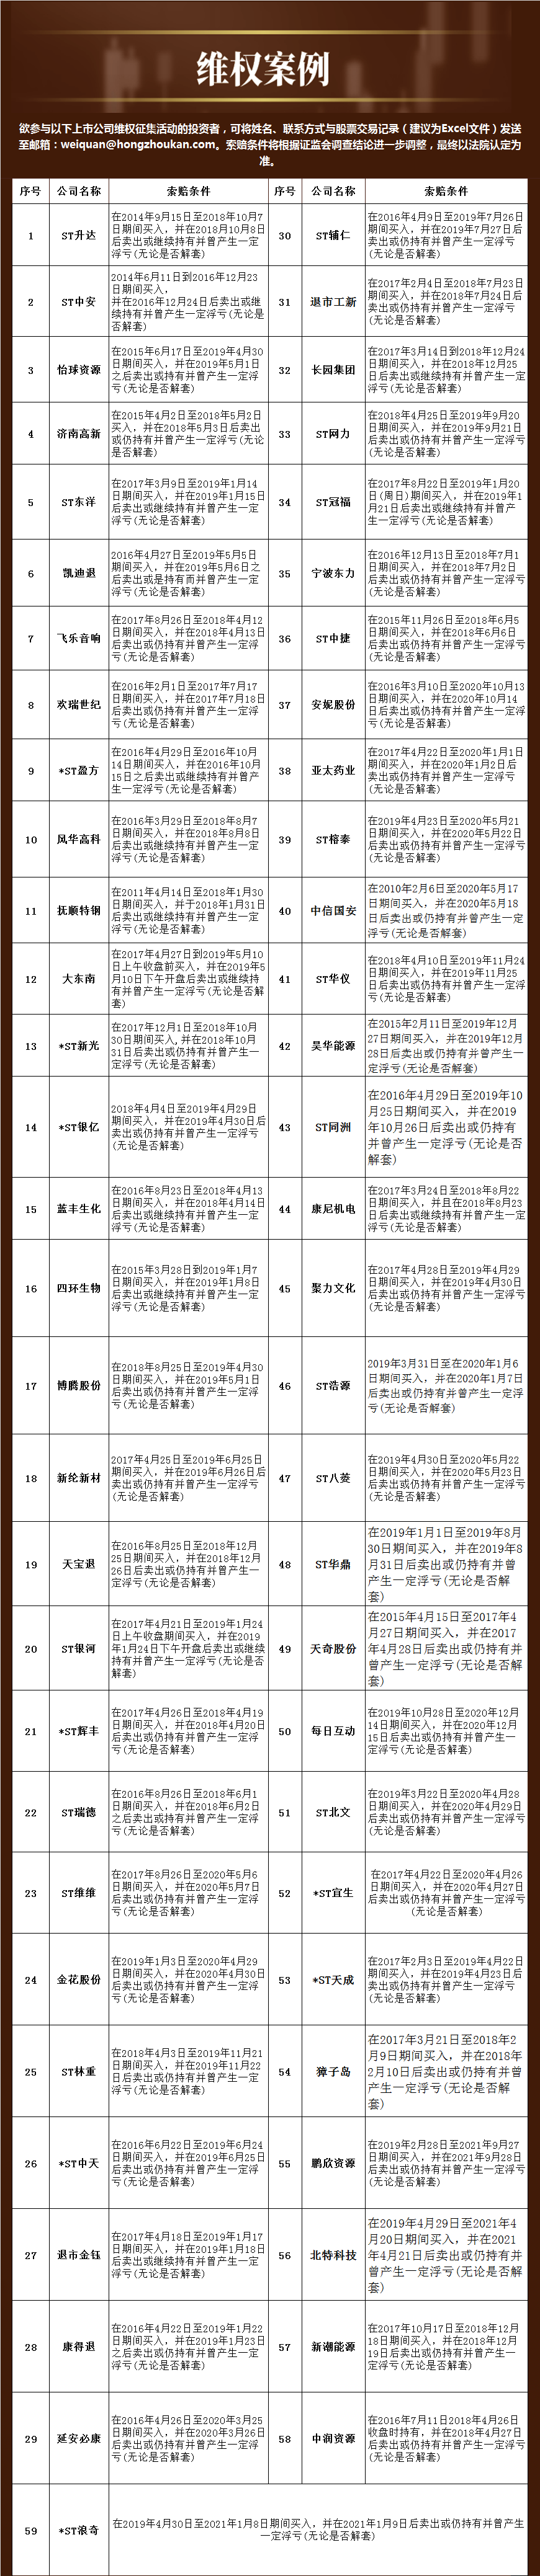 “民间维权 | ST中安：虚假陈述责任纠纷案件合计3581例